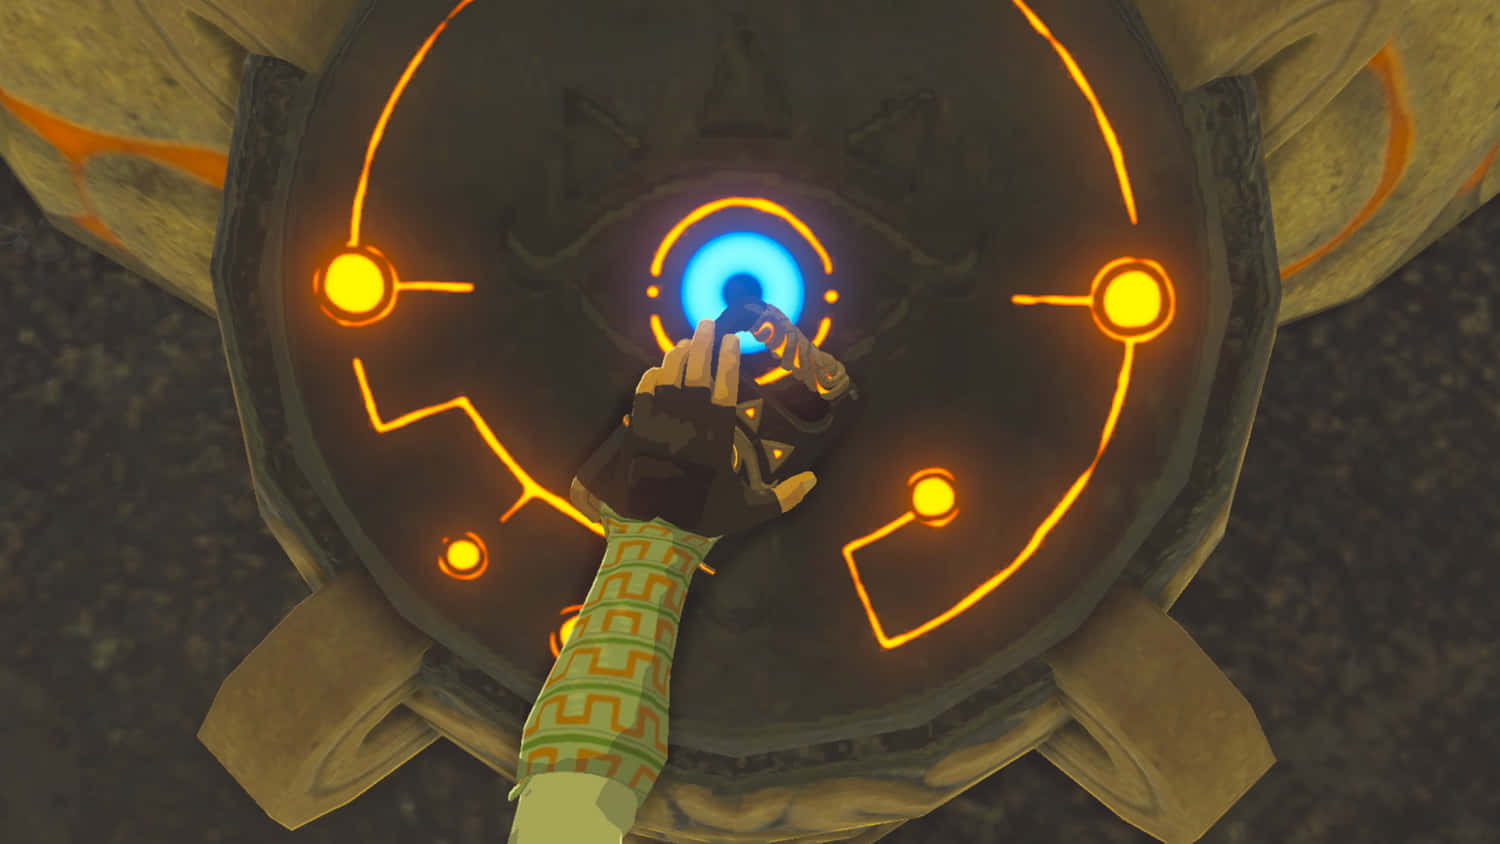 Derscreenshot Von The Legend Of Zelda: Breath Of The Wild Wallpaper